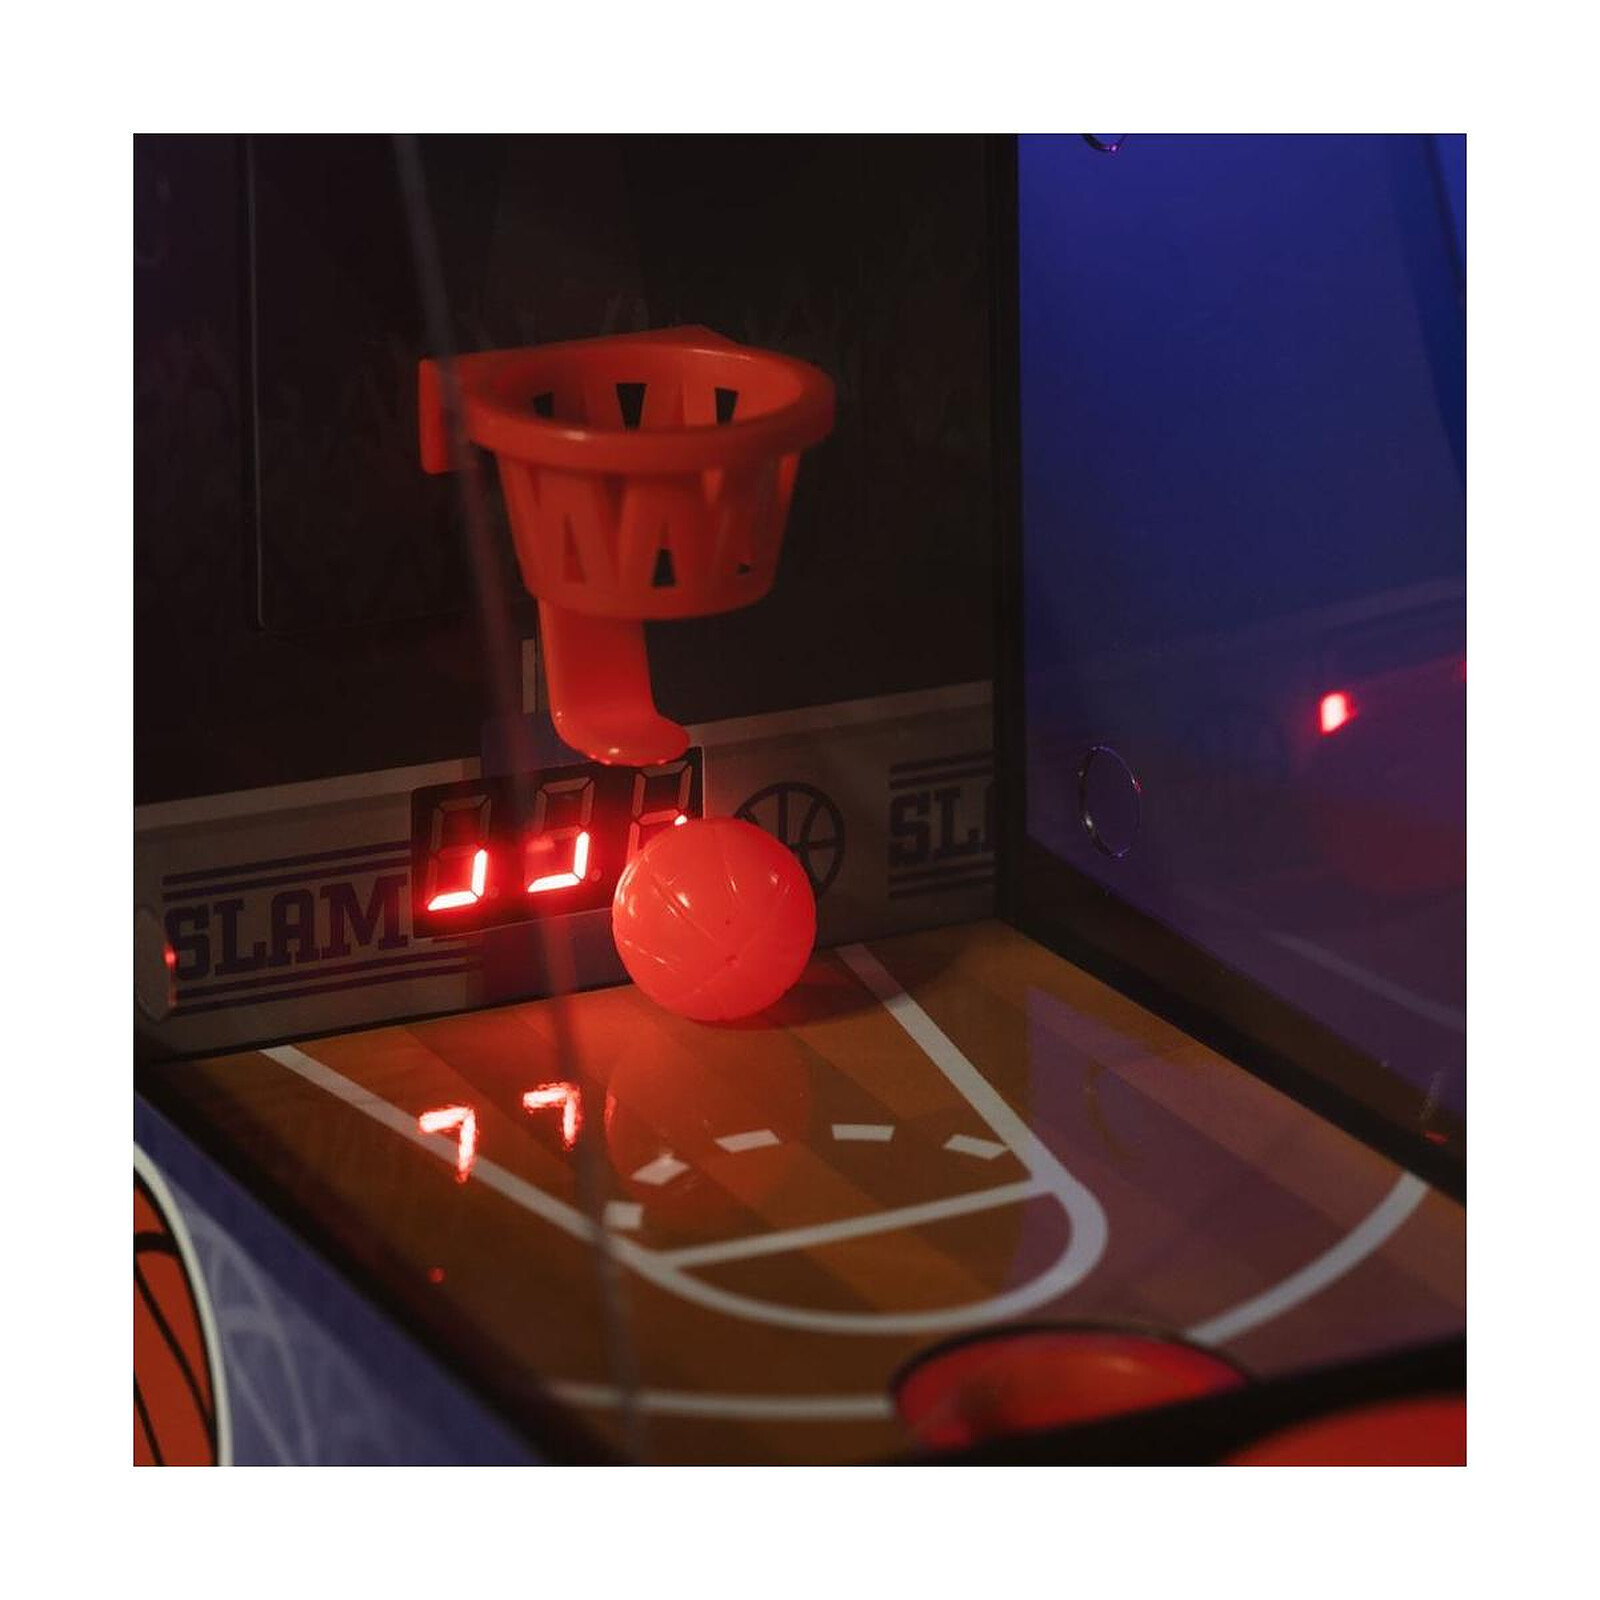 marque generique - Jeu de table de basket-ball mini - Jeux